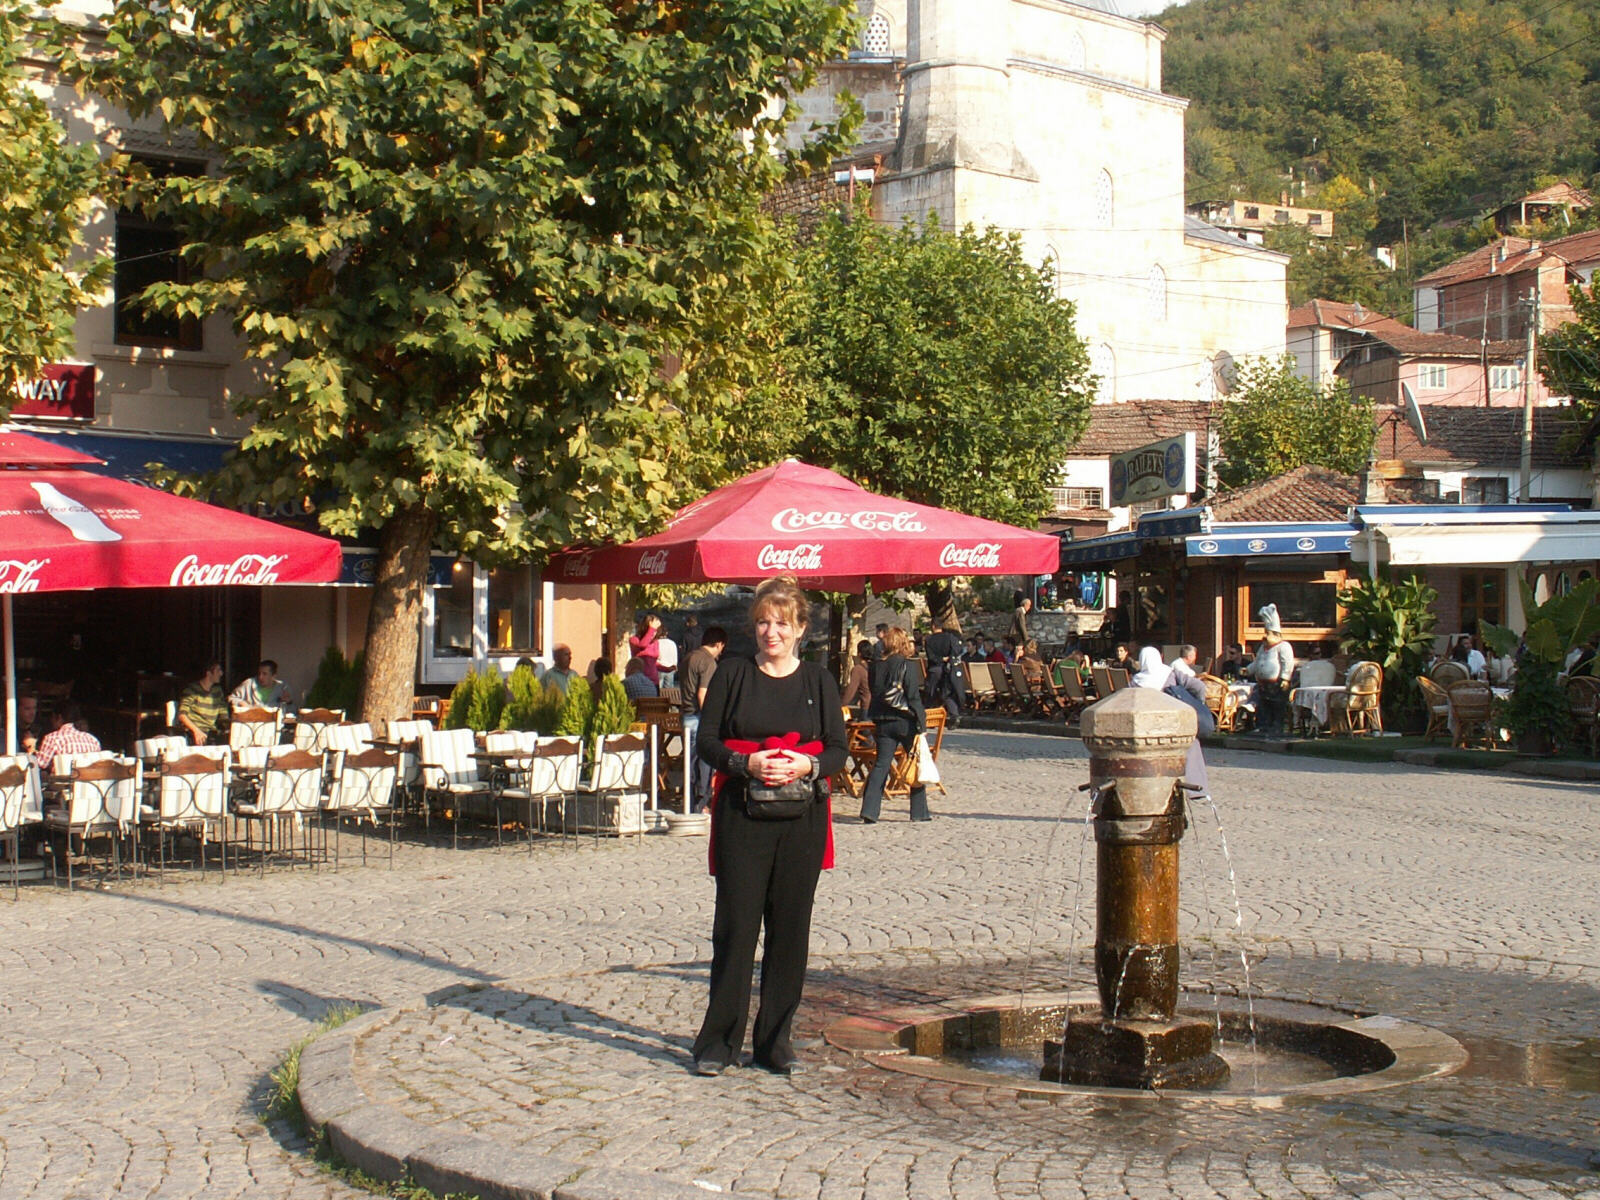 The main square in Prizren, Kosovo